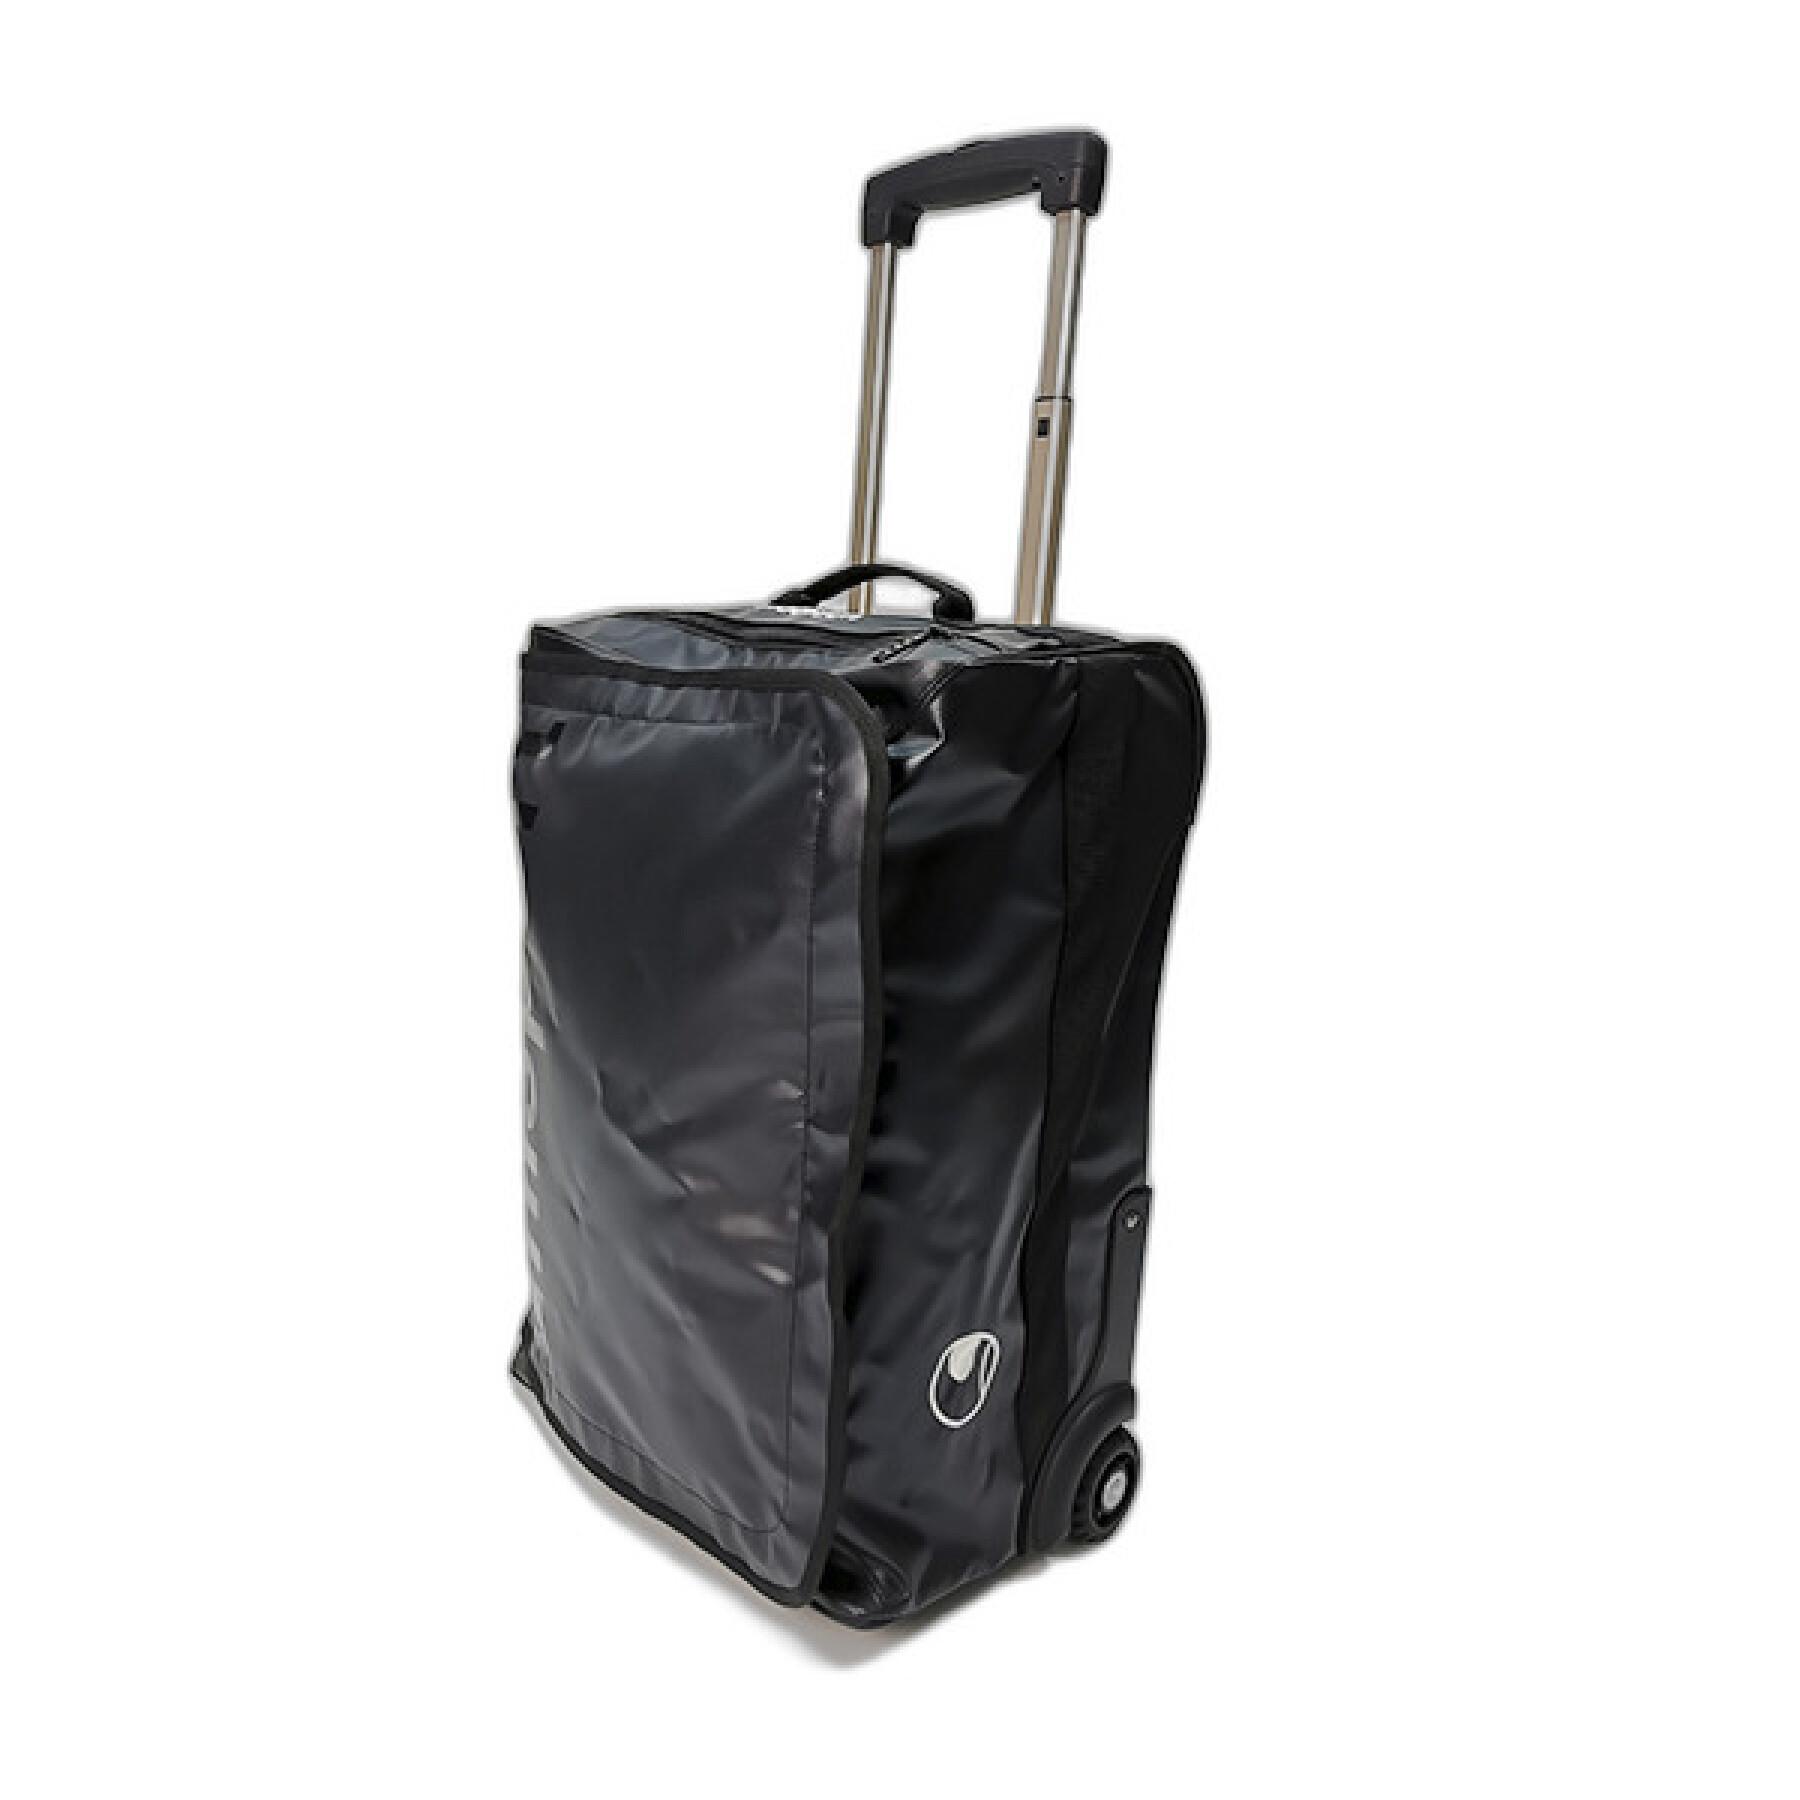 Rolling bag Uhlsport Premium 35 L